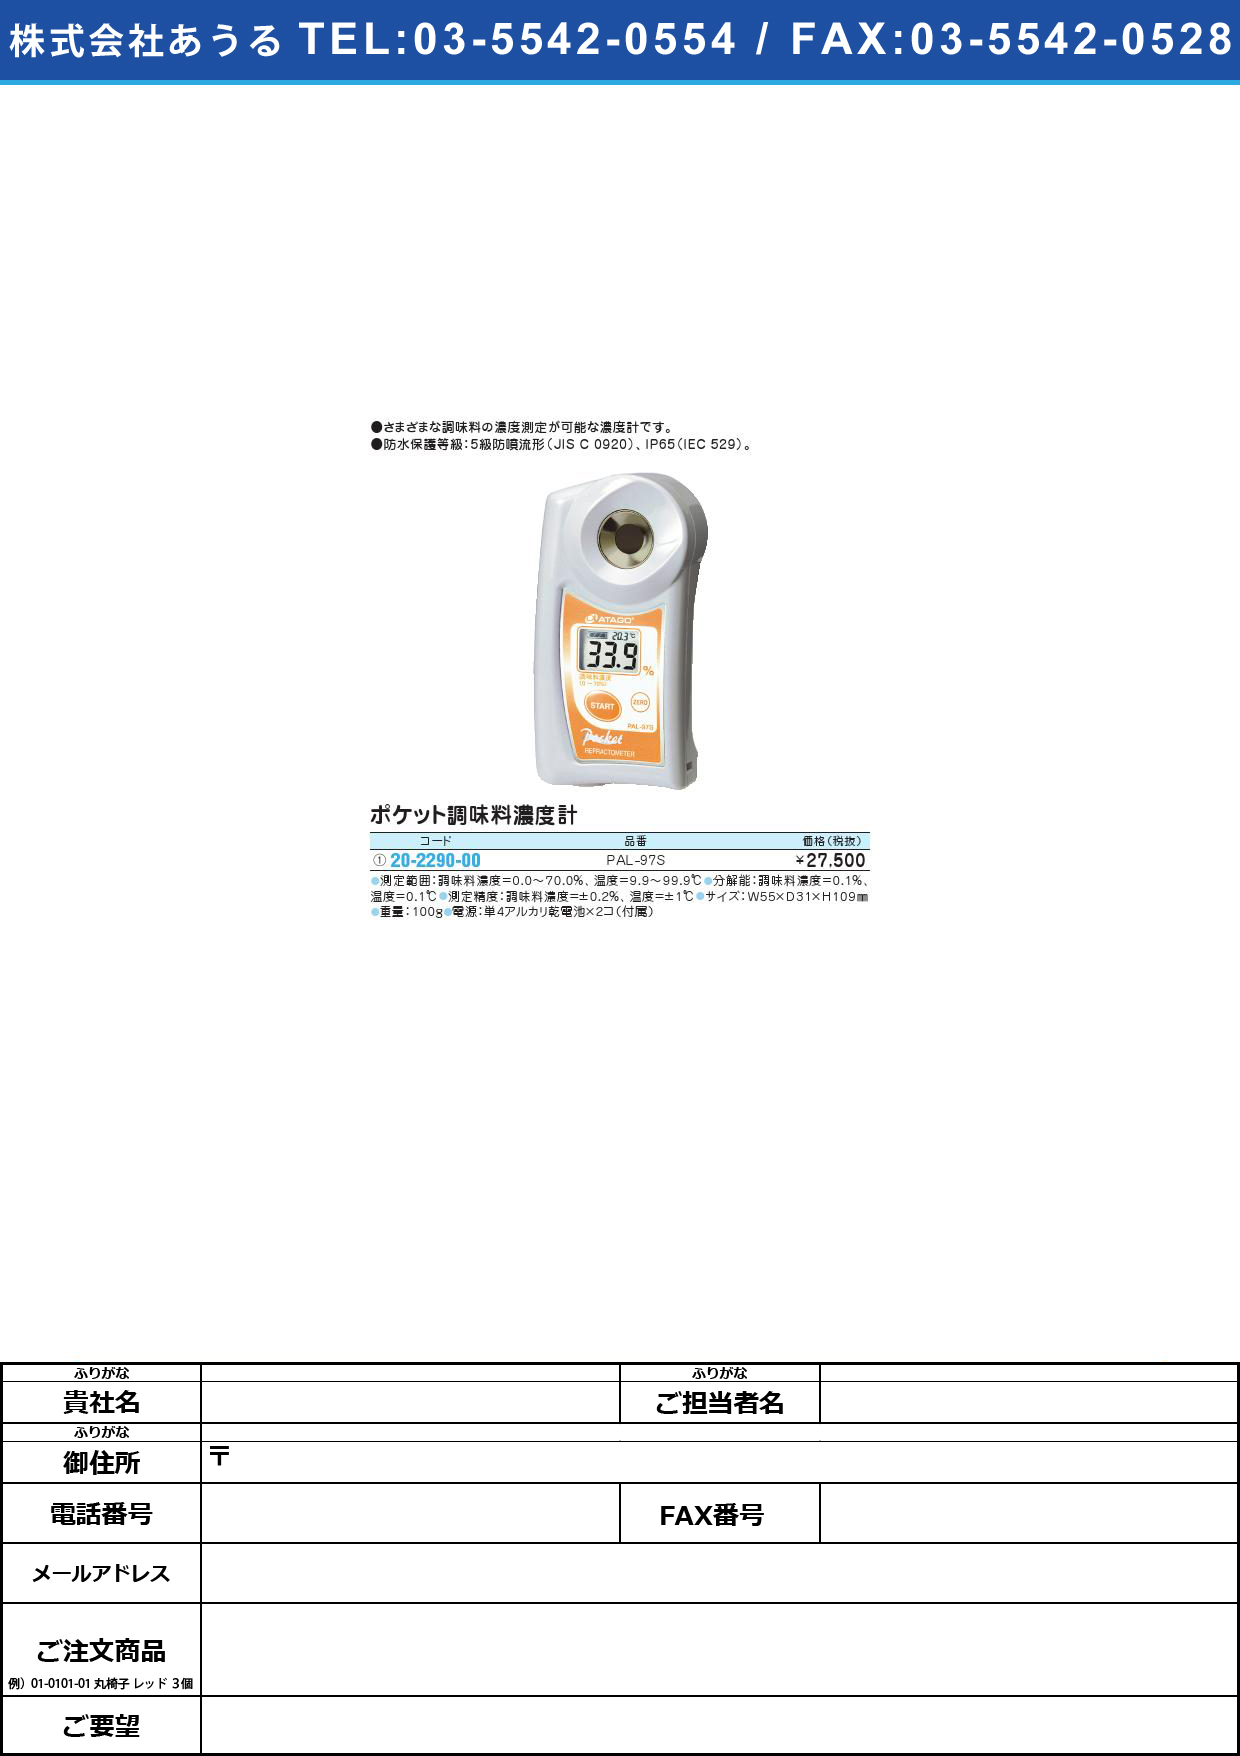 ポケット濃度計（調味料） PAL-97Sﾎﾟｹｯﾄﾉｳﾄﾞｹｲ(ﾁｮｳﾐﾘｮｳ)(20-2290-00)